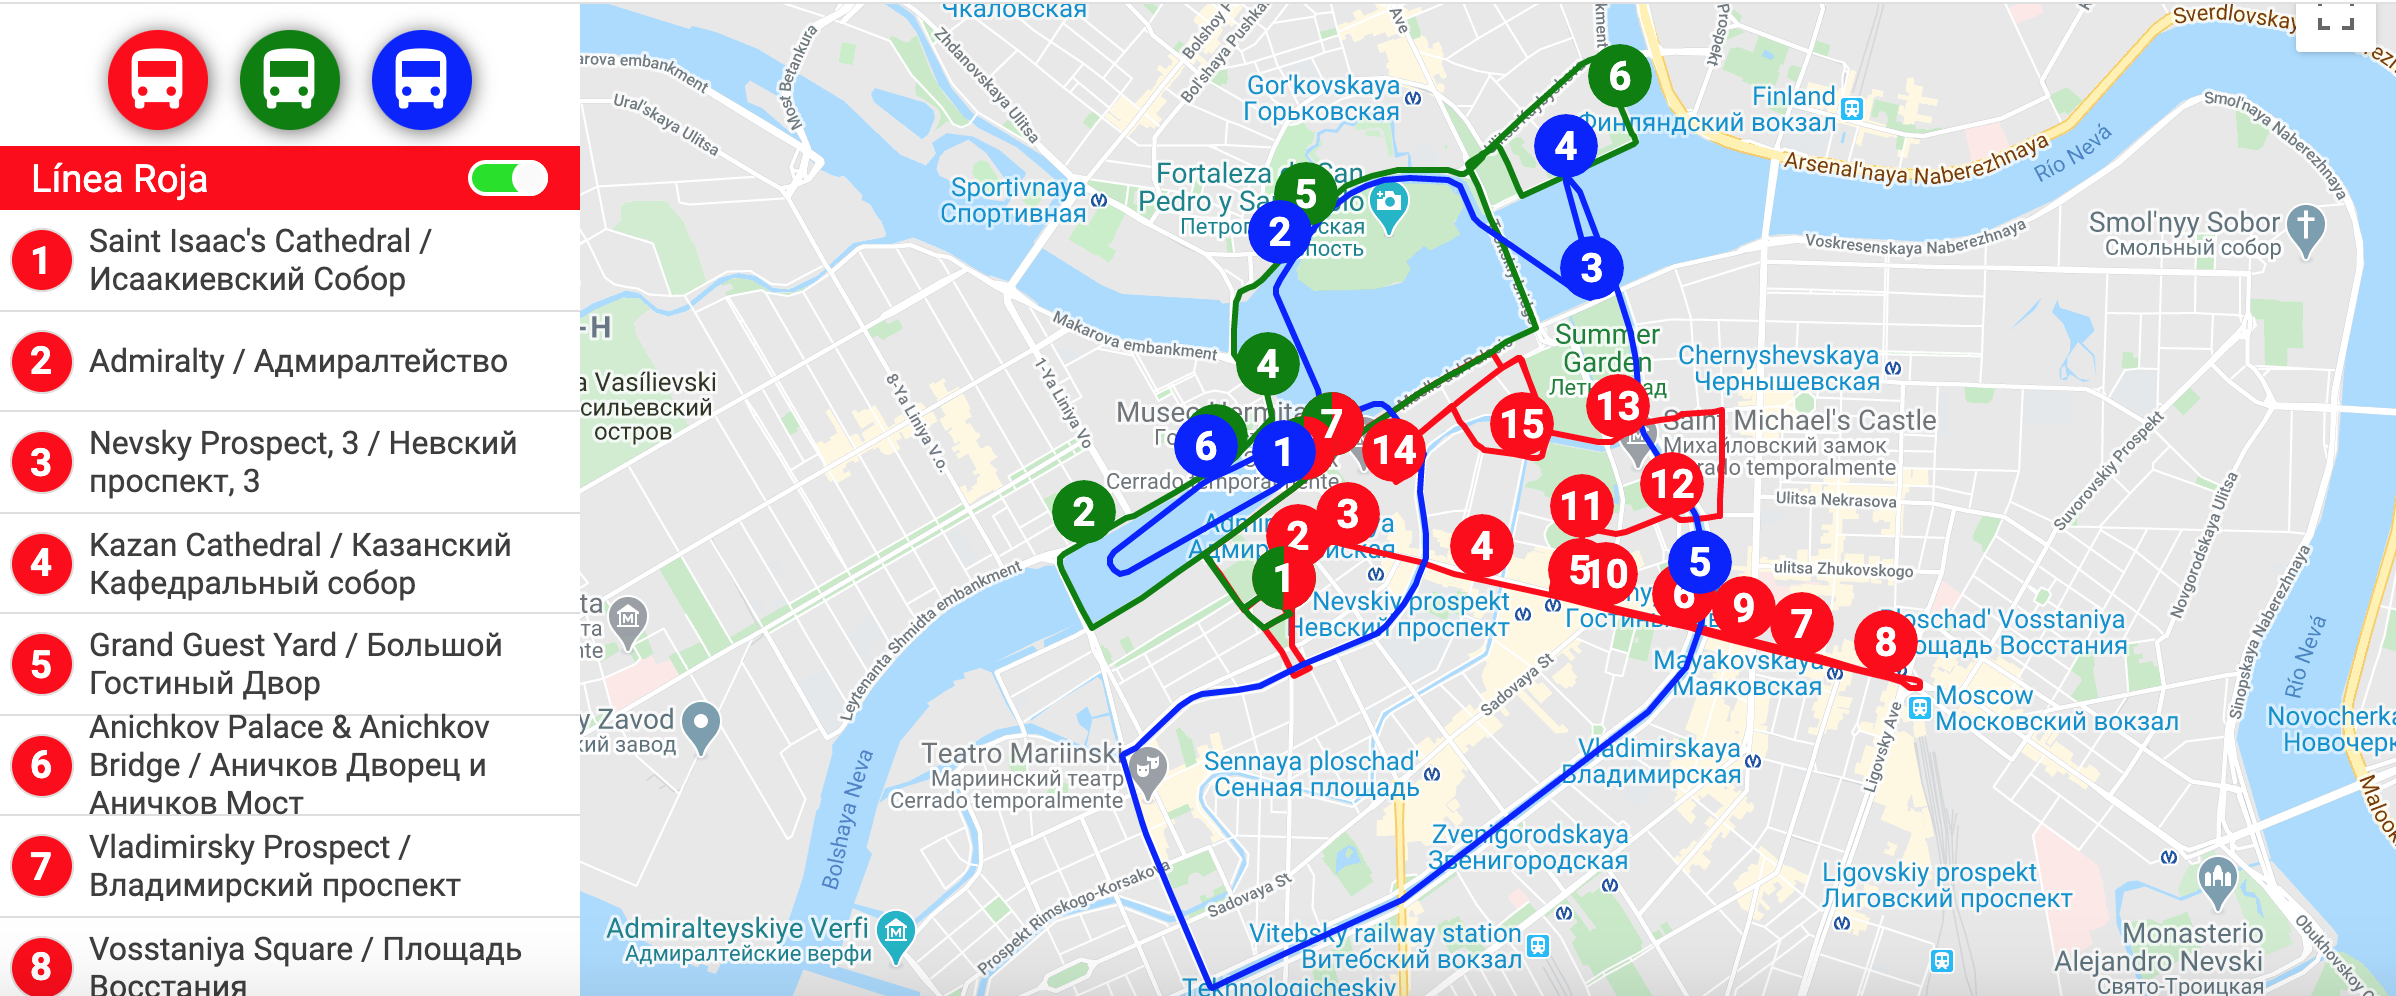 Circuitos del Bus turístico de San Petersburgo